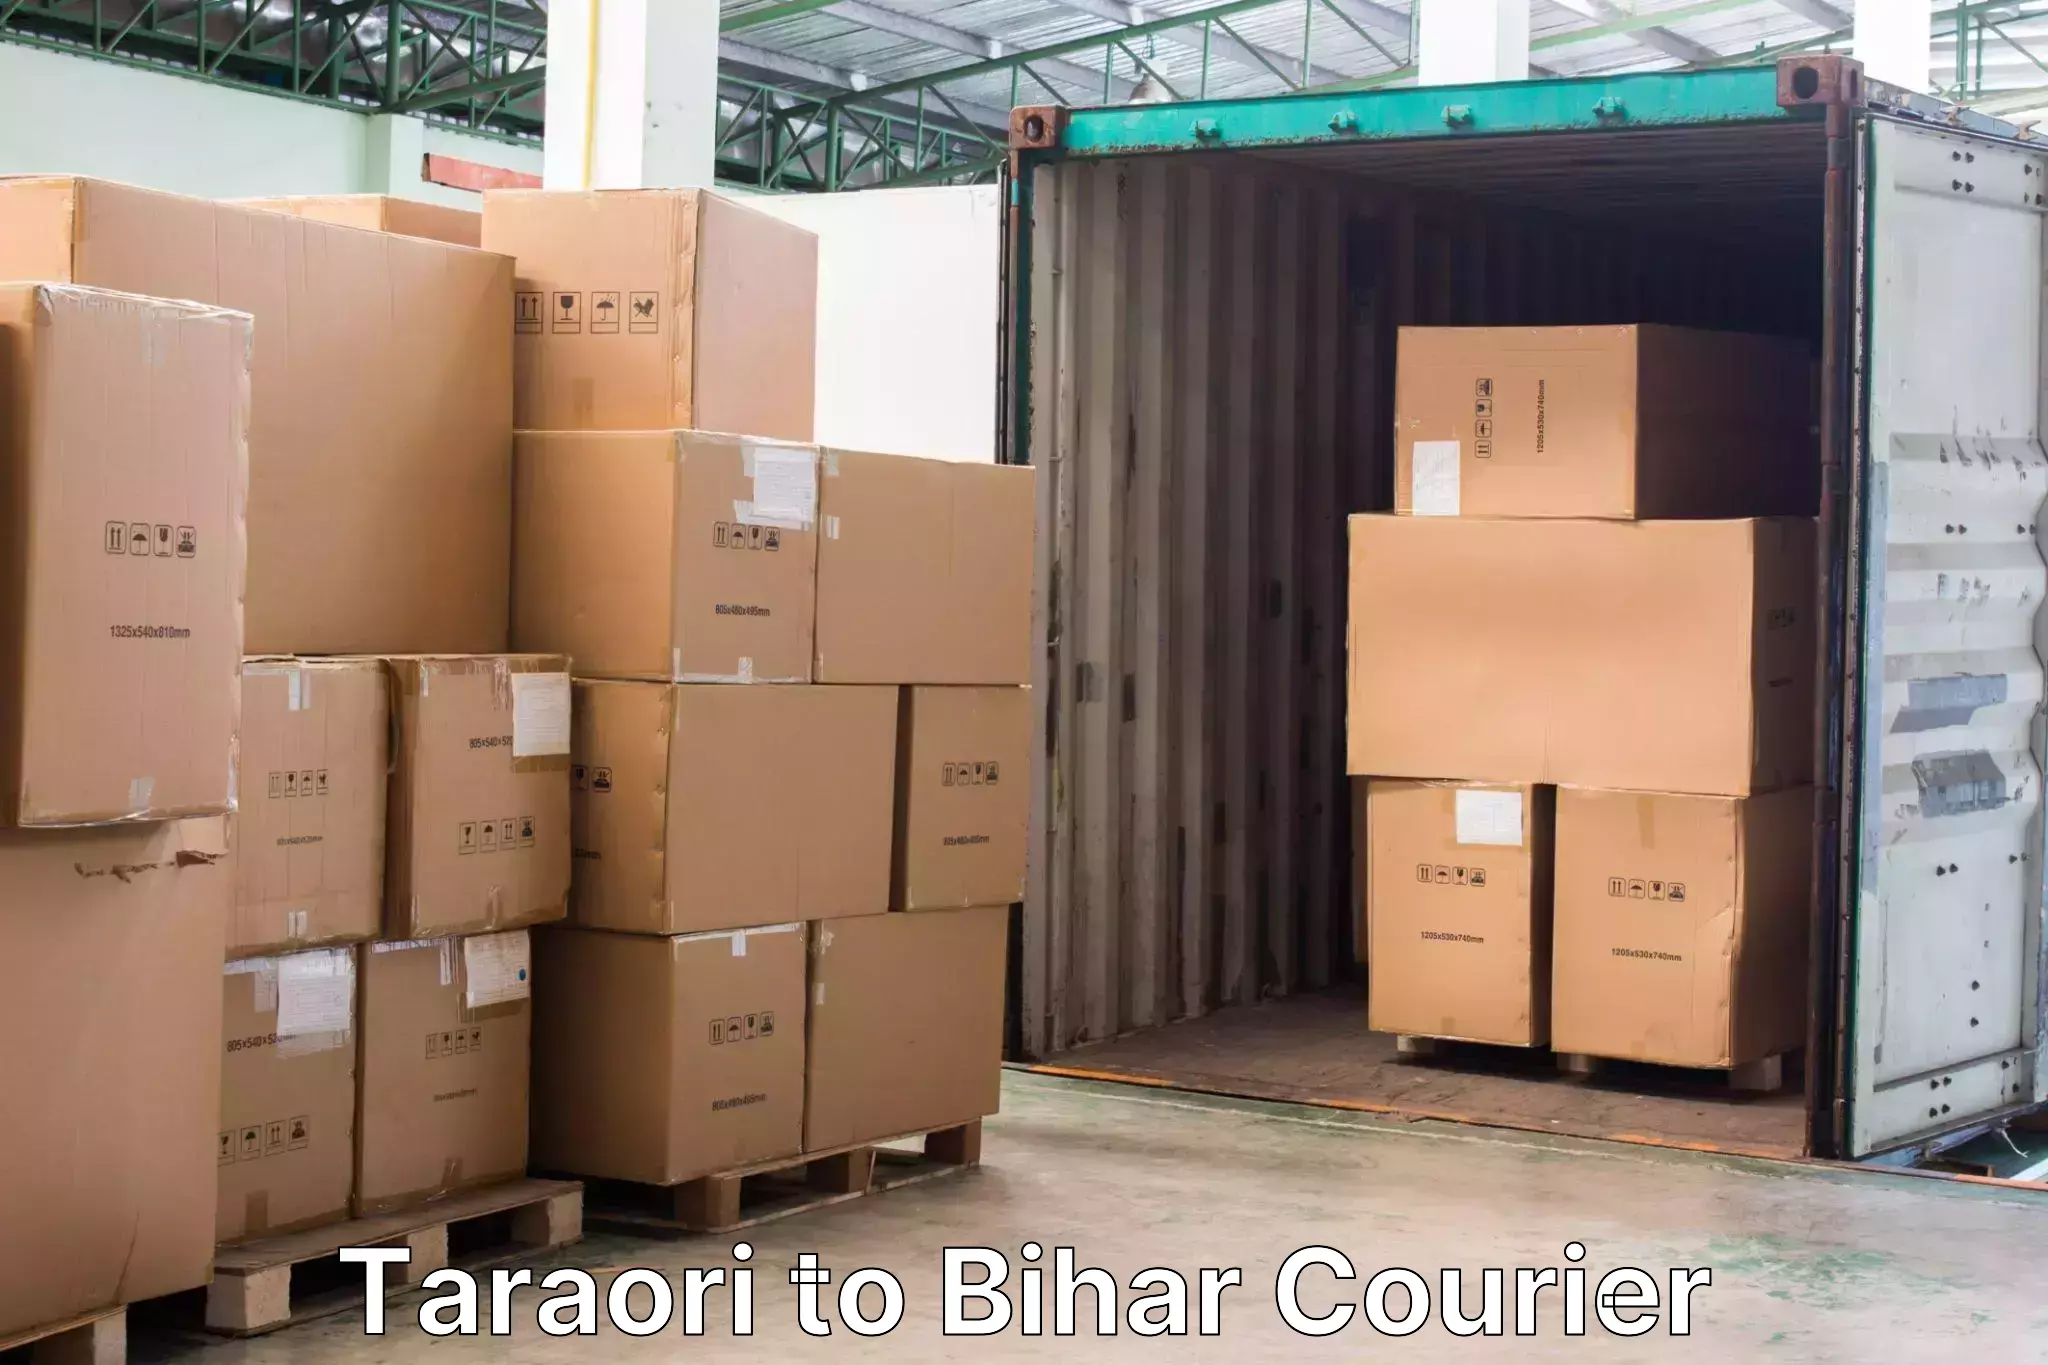 Luggage transfer service Taraori to Piro